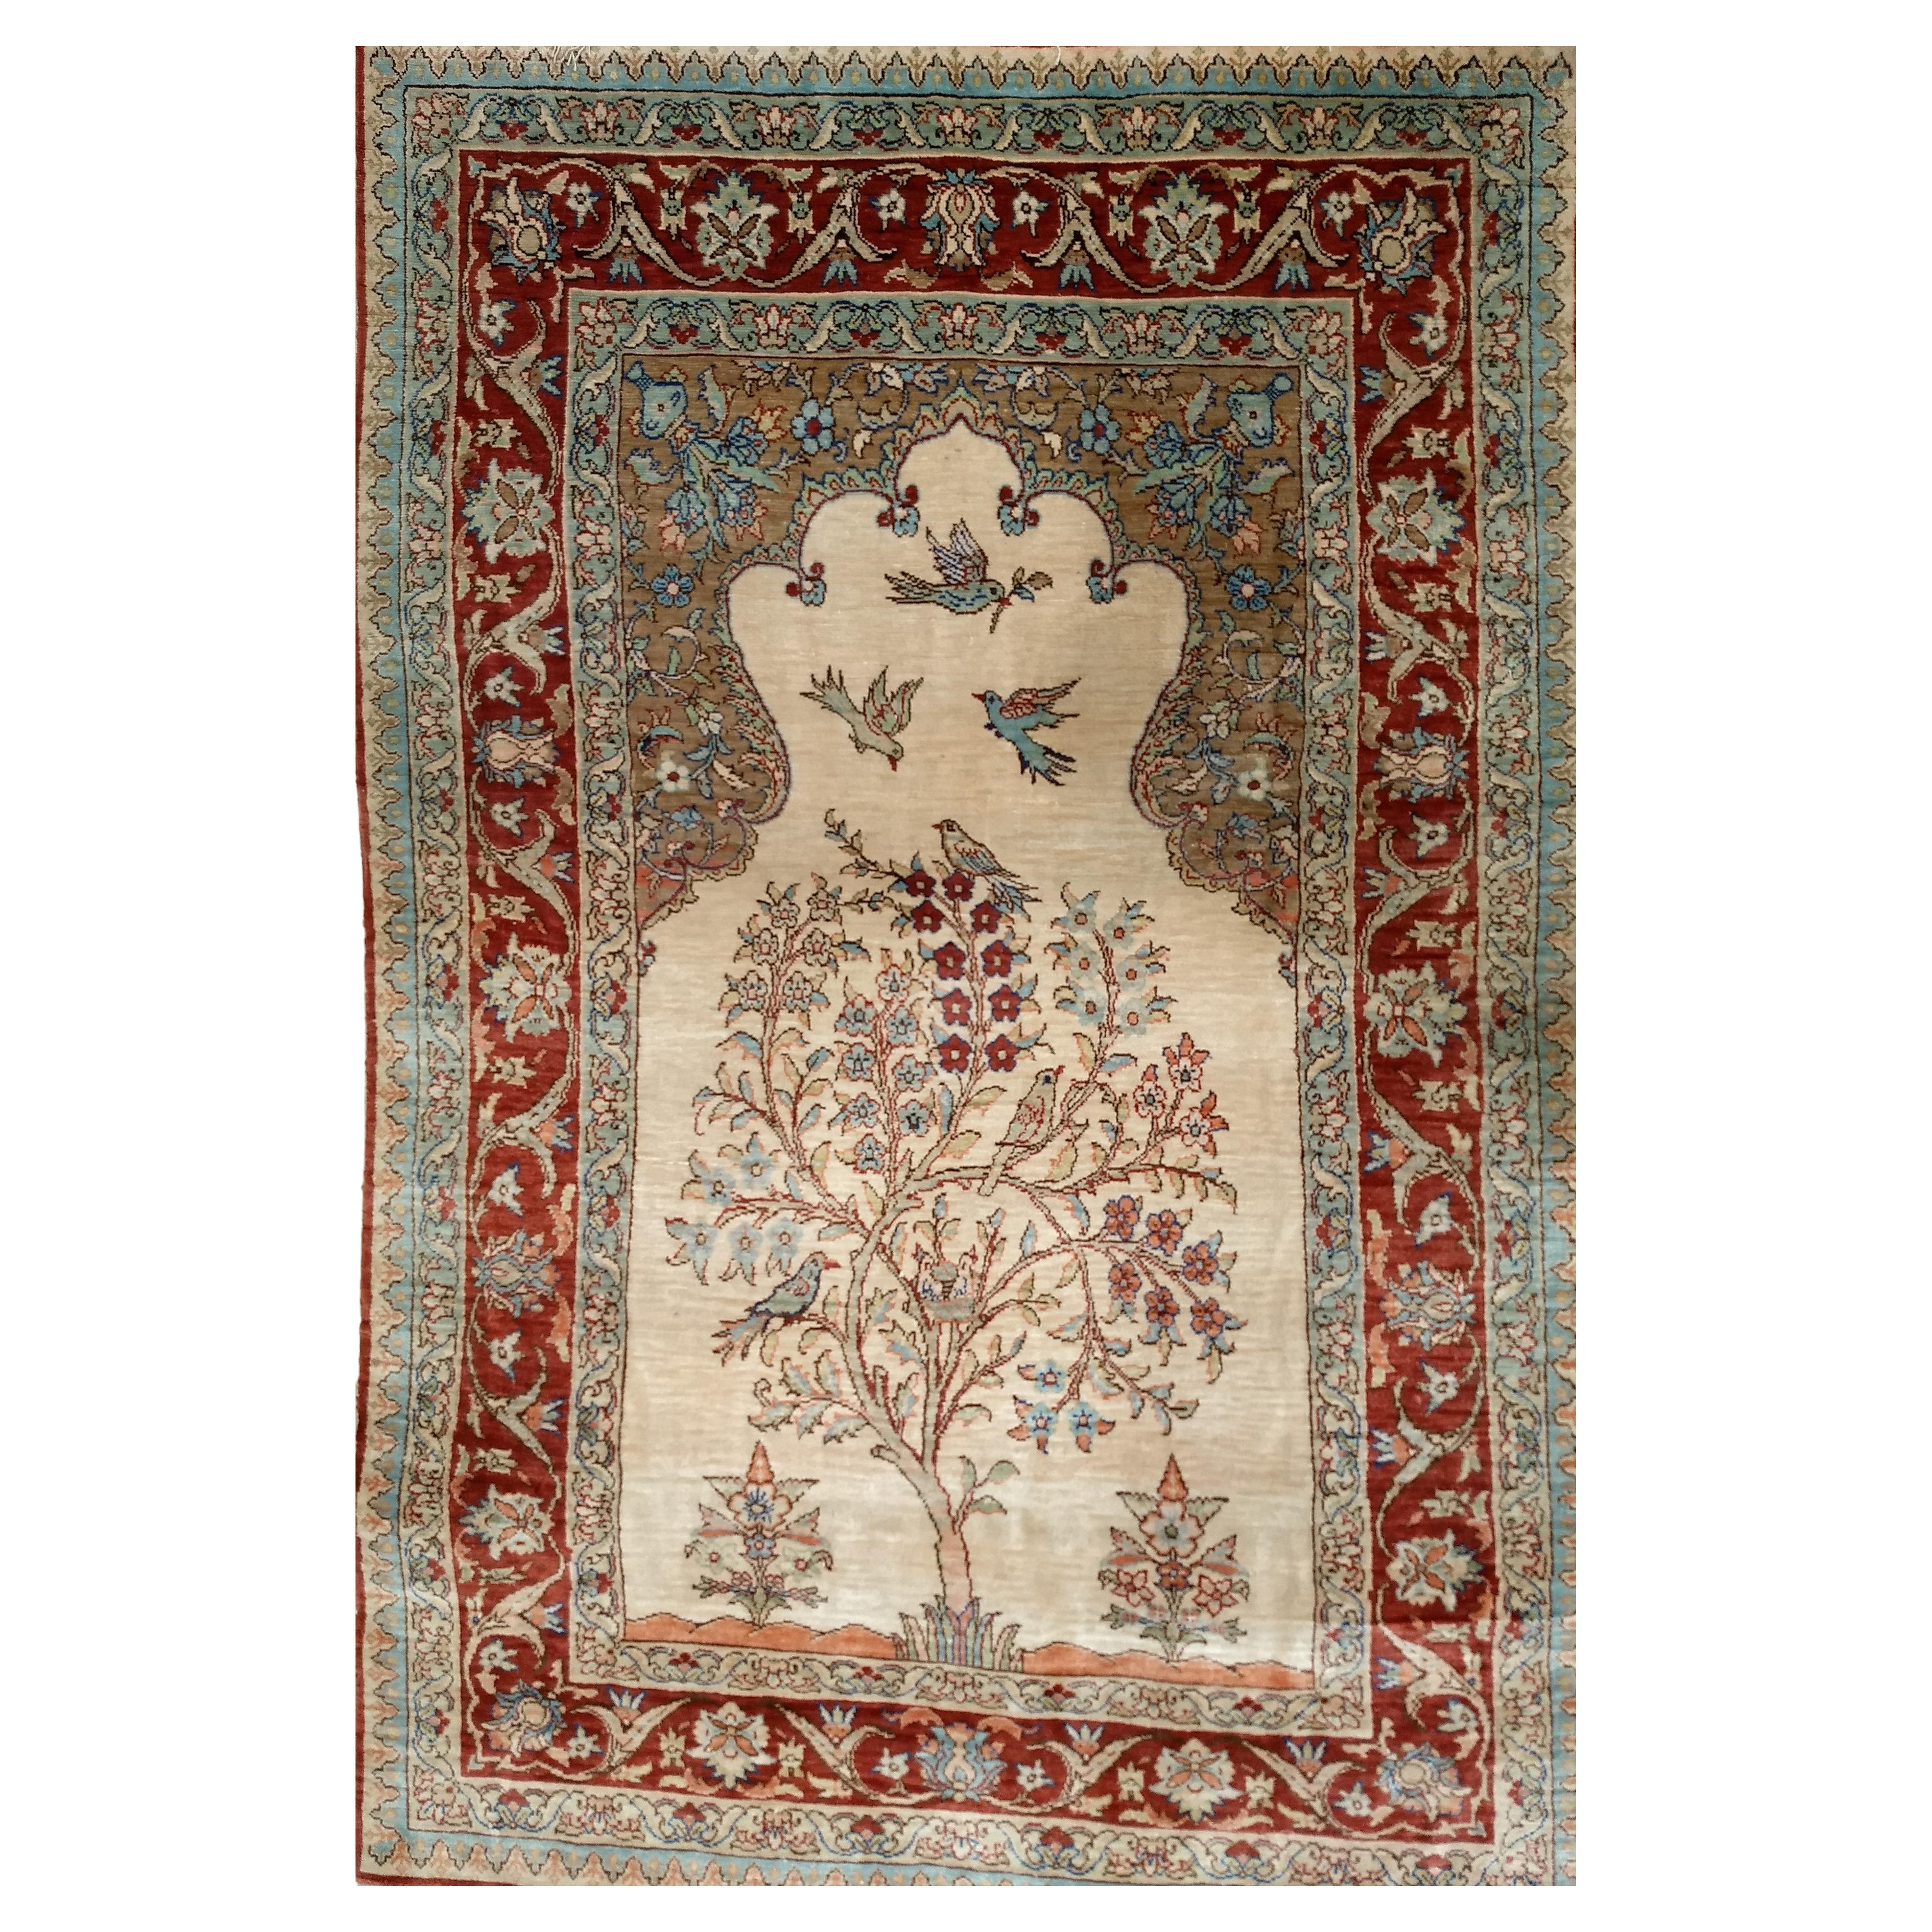 Türkischer Kayseri-Teppich aus Seide in Baum des Lebens-Muster in Elfenbein, Burgund, Blau